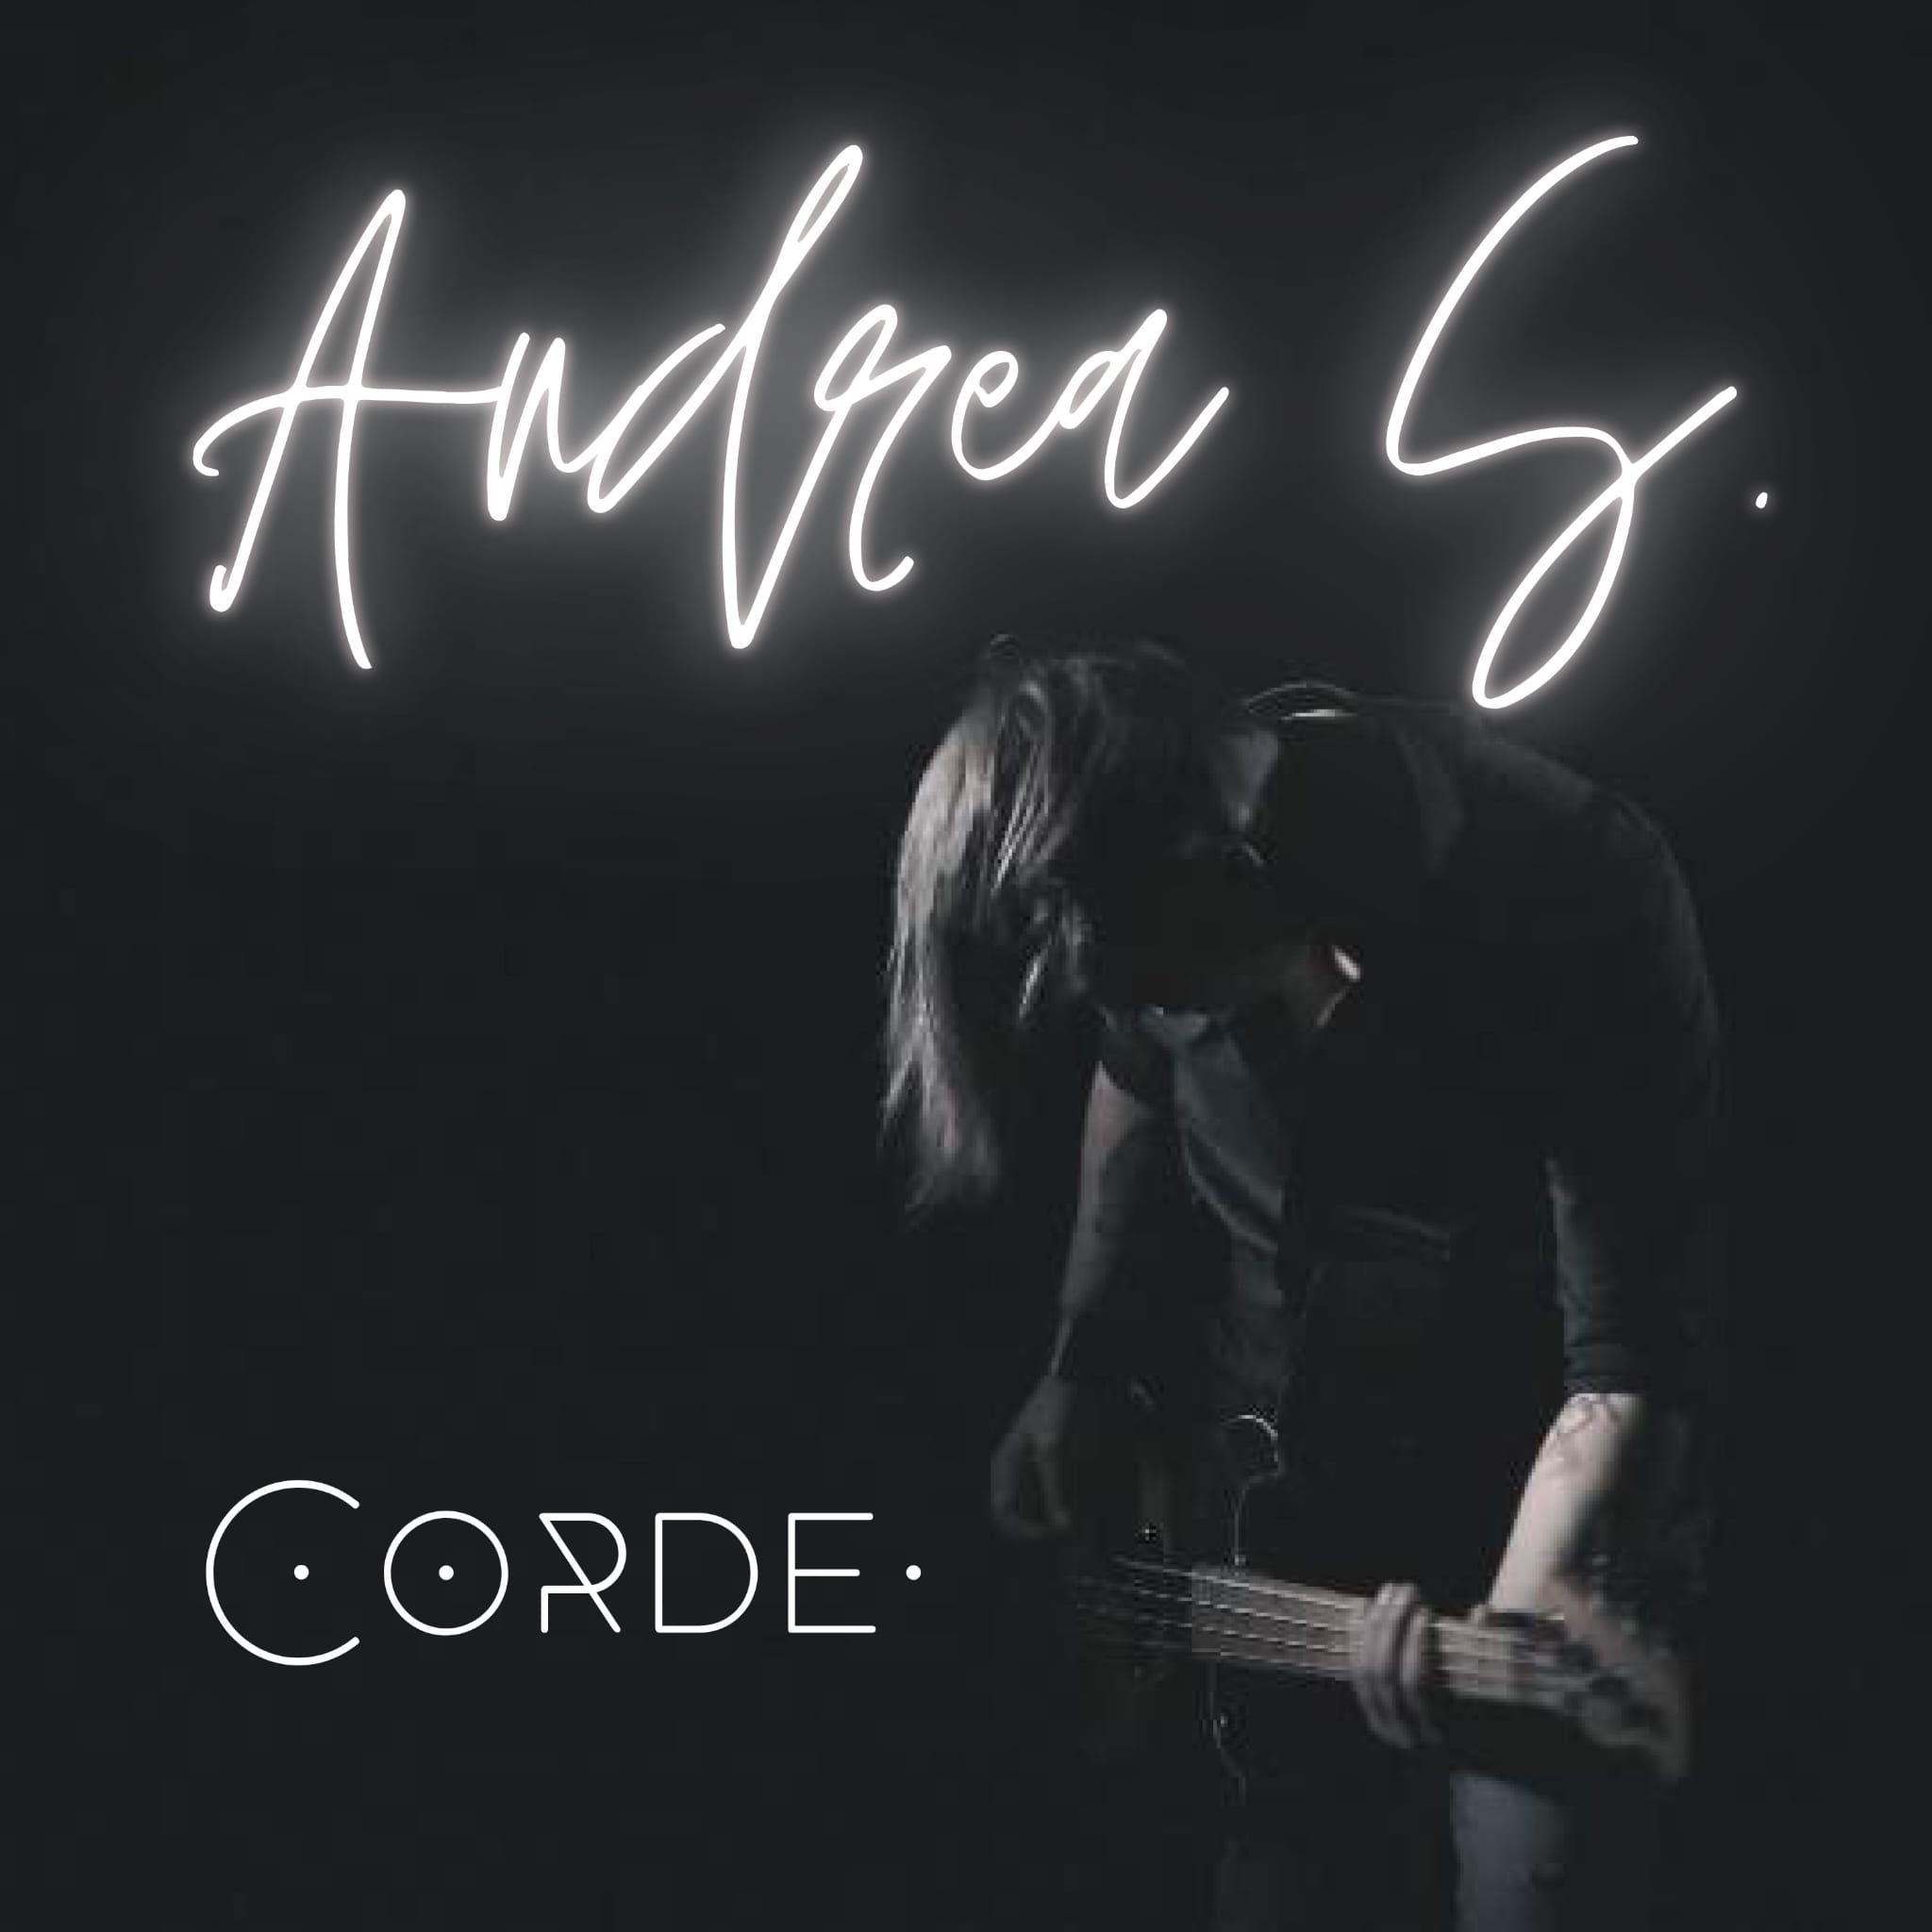 Corde, il 13 gennaio l’esordio solista di Andrea Spinelli con una ballata rock dal sapore new wave